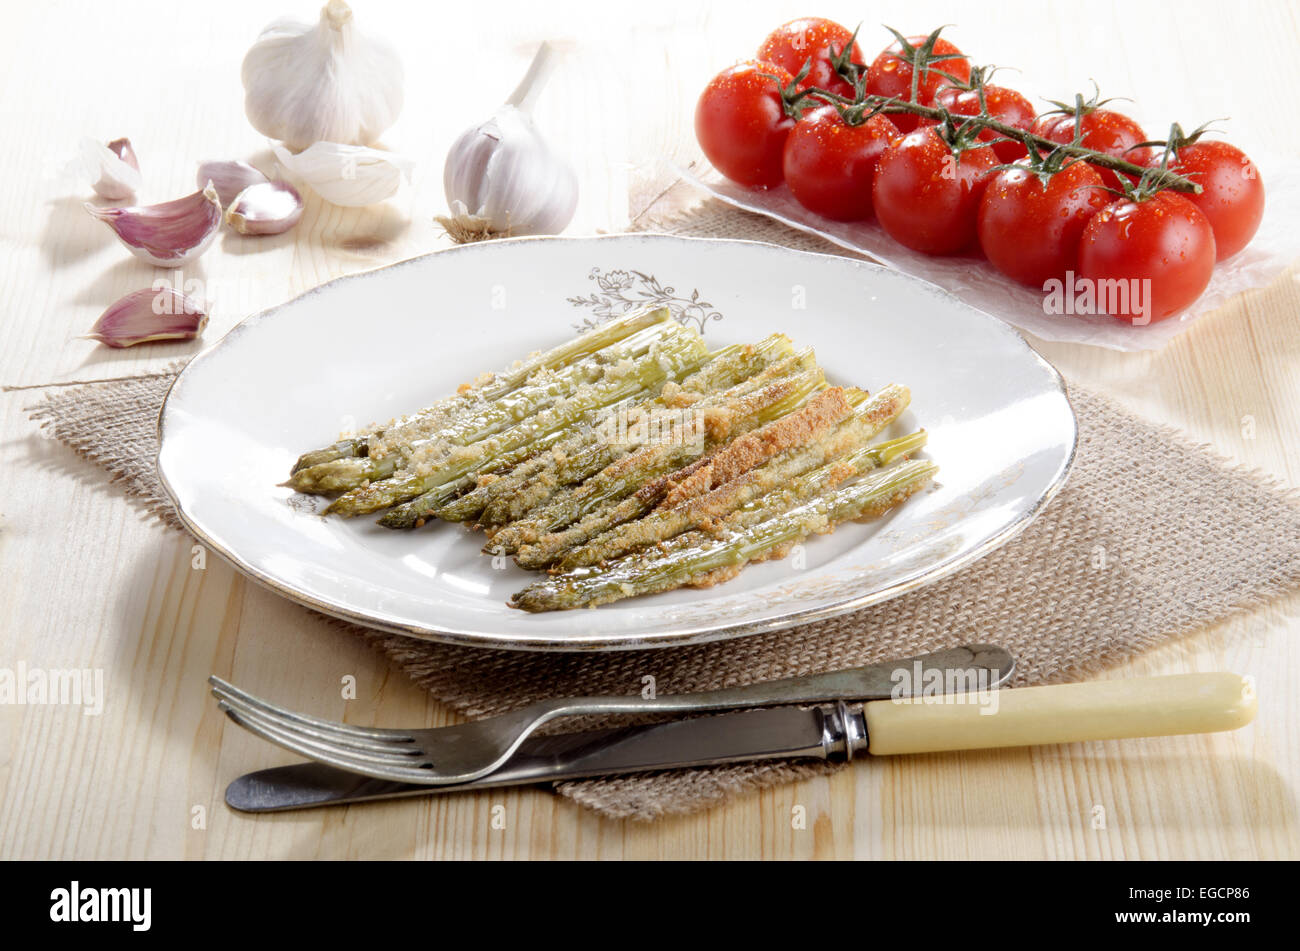 Cotta asparagi verdi con briciole di pane e formaggio parmigiano grattugiato su una piastra Foto Stock